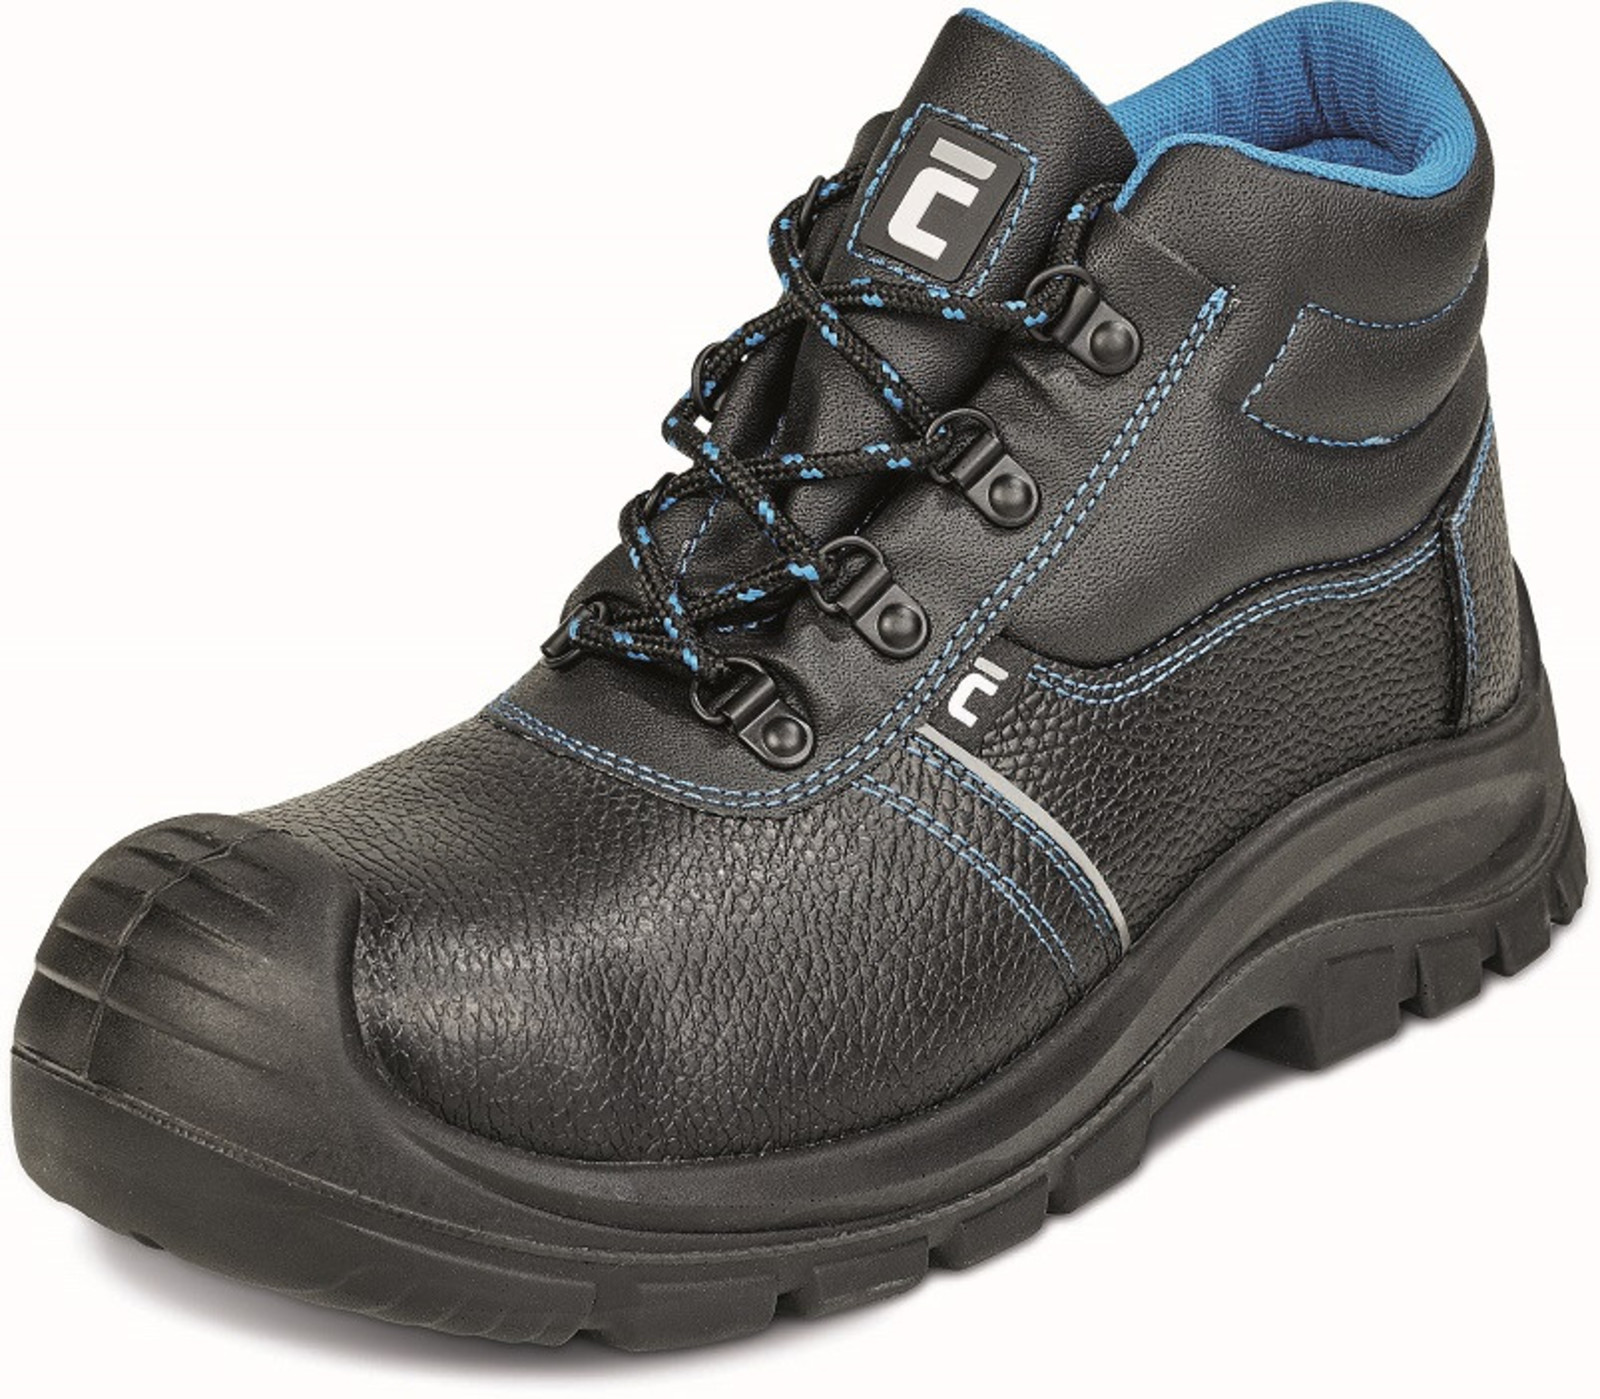 Pracovná obuv Cerva XT O1 - veľkosť: 43, farba: čierna